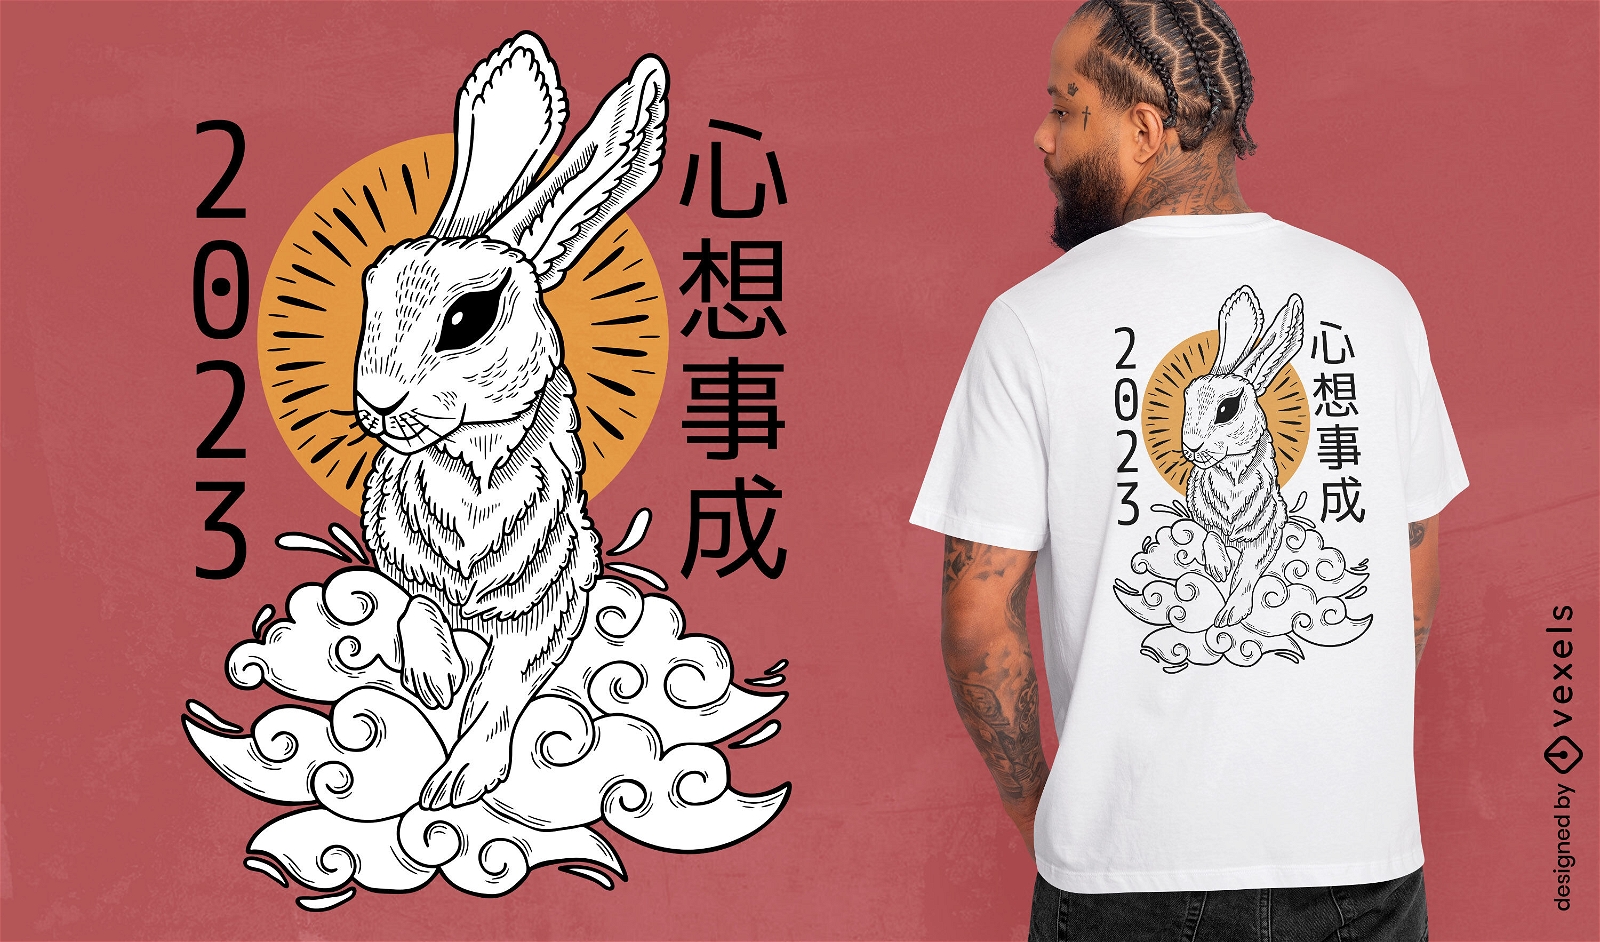 Feiertags-T-Shirt Entwurf des chinesischen Neujahrsfests des Kaninchens